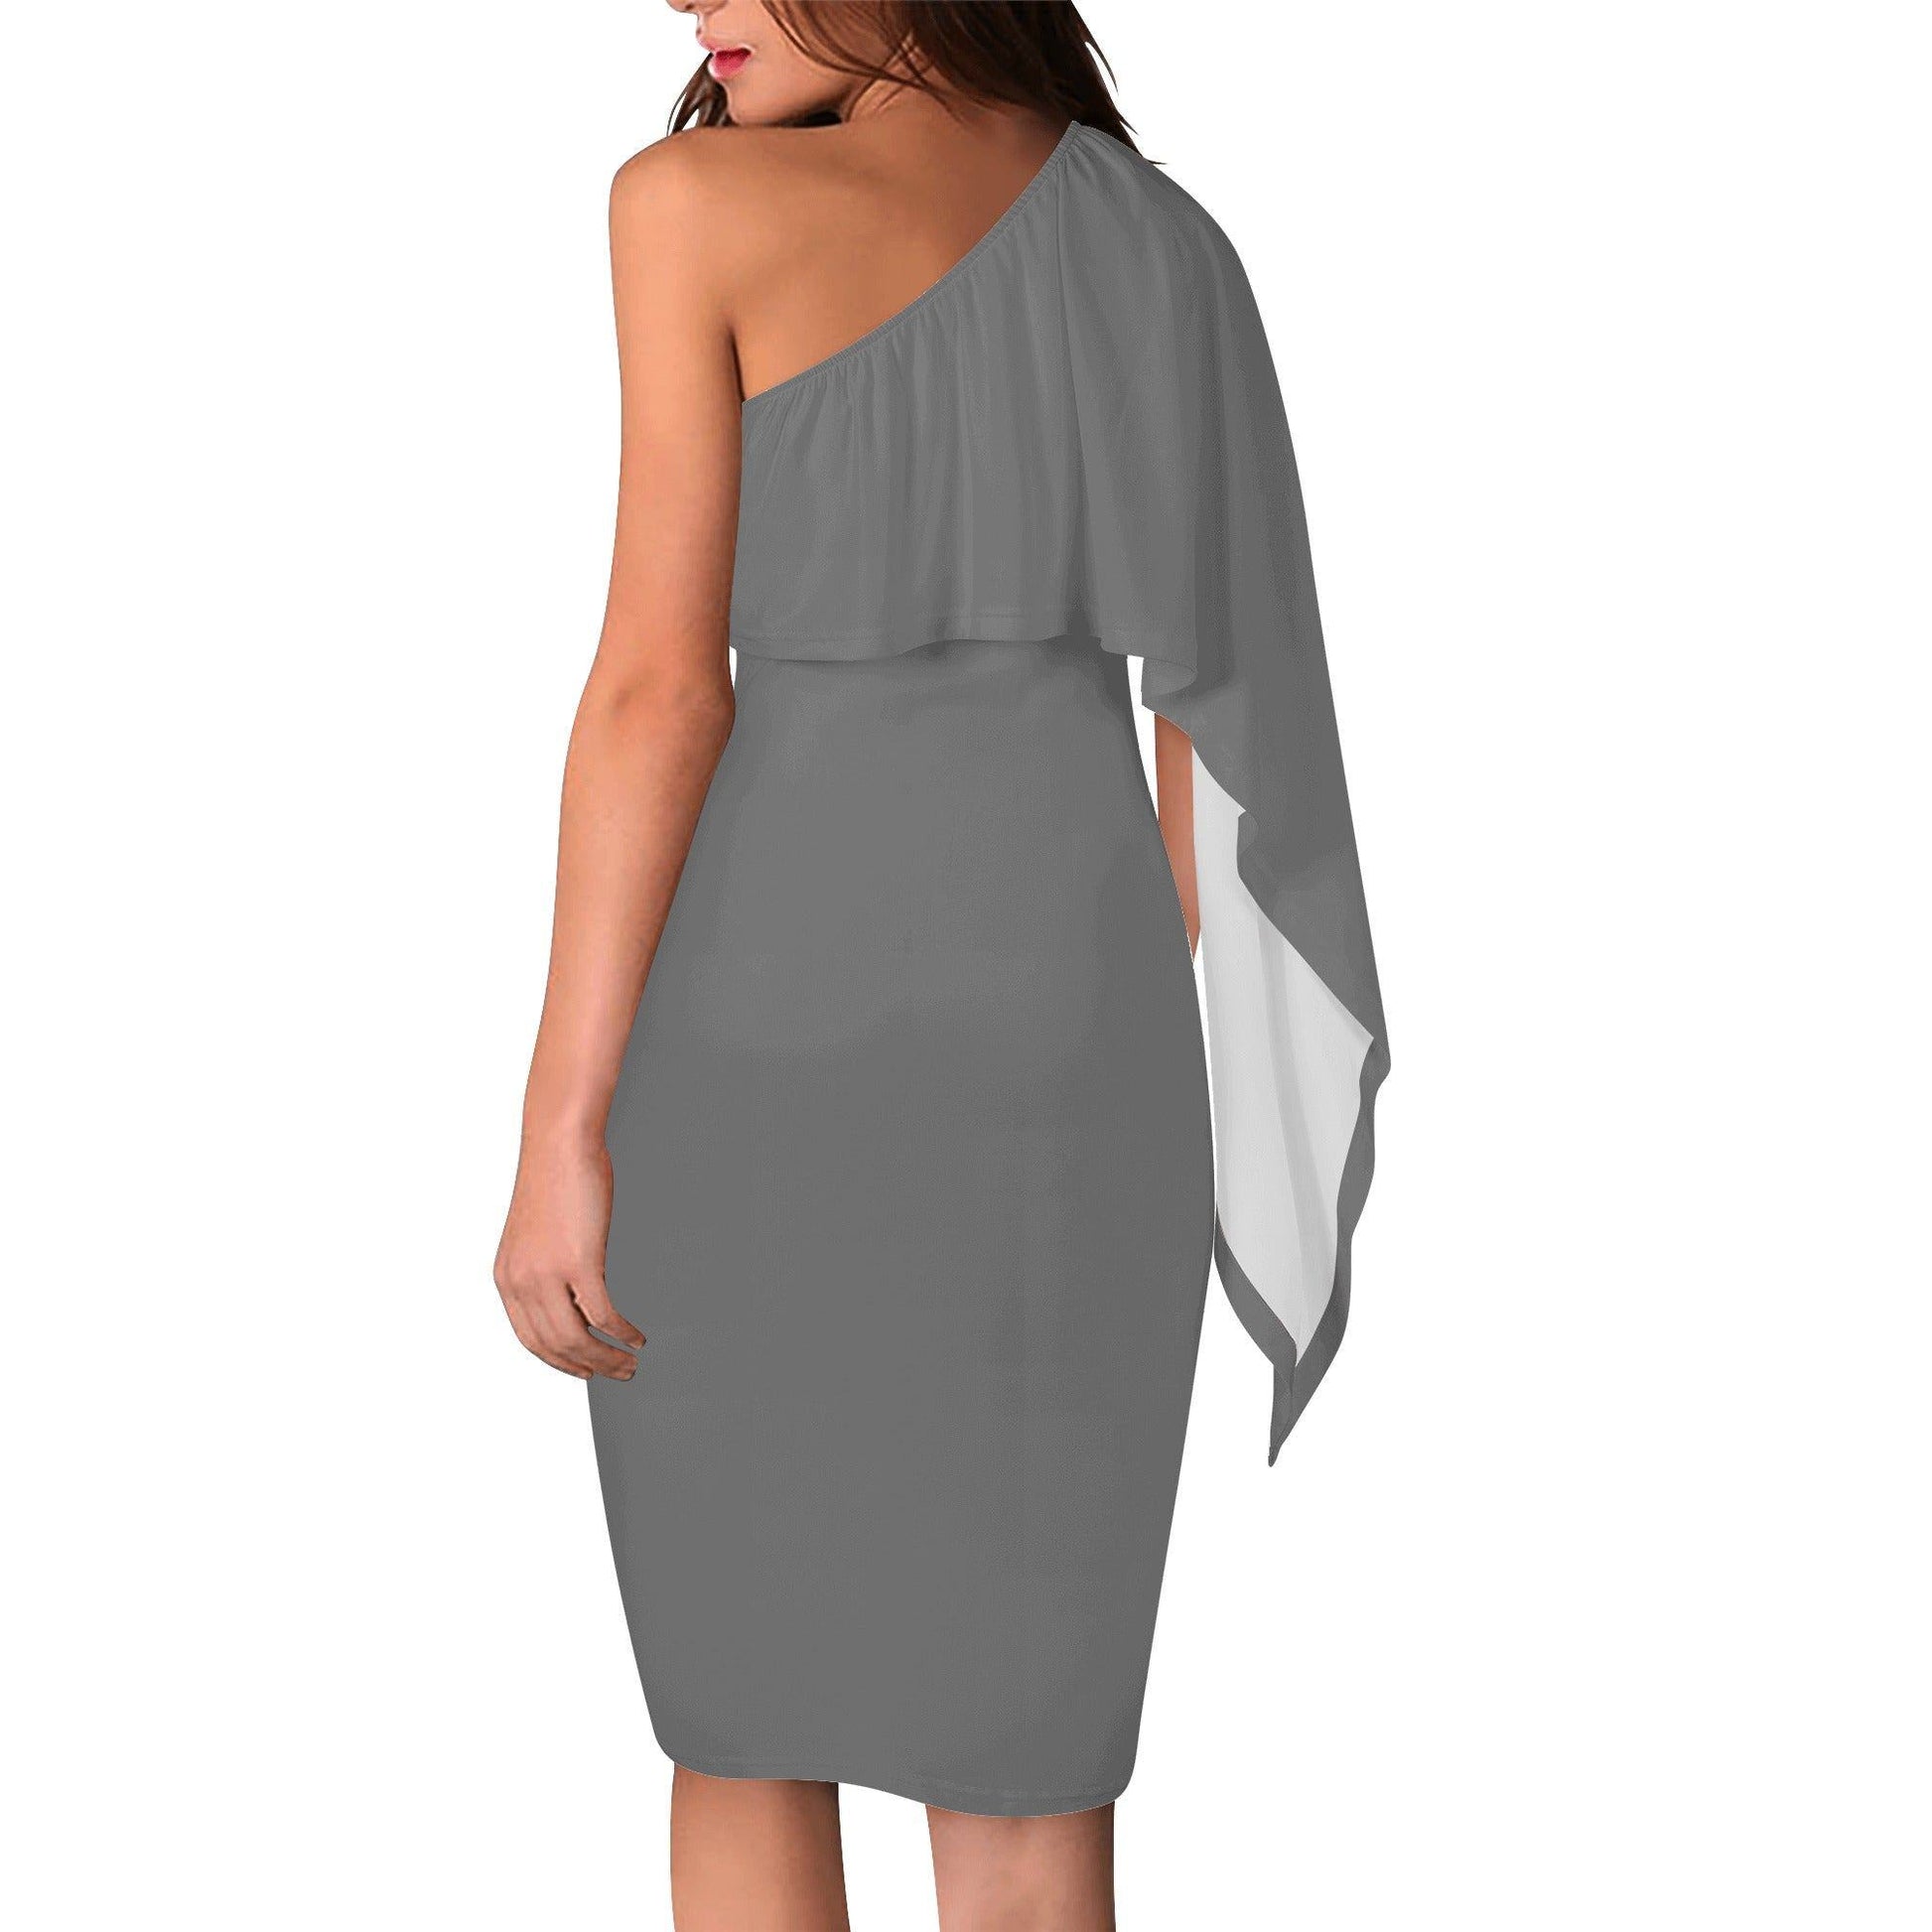 Grauer Long Sleeve One Shoulder Dress -- Grauer Long Sleeve One Shoulder Dress - undefined Long Sleeve One Shoulder Dress | JLR Design